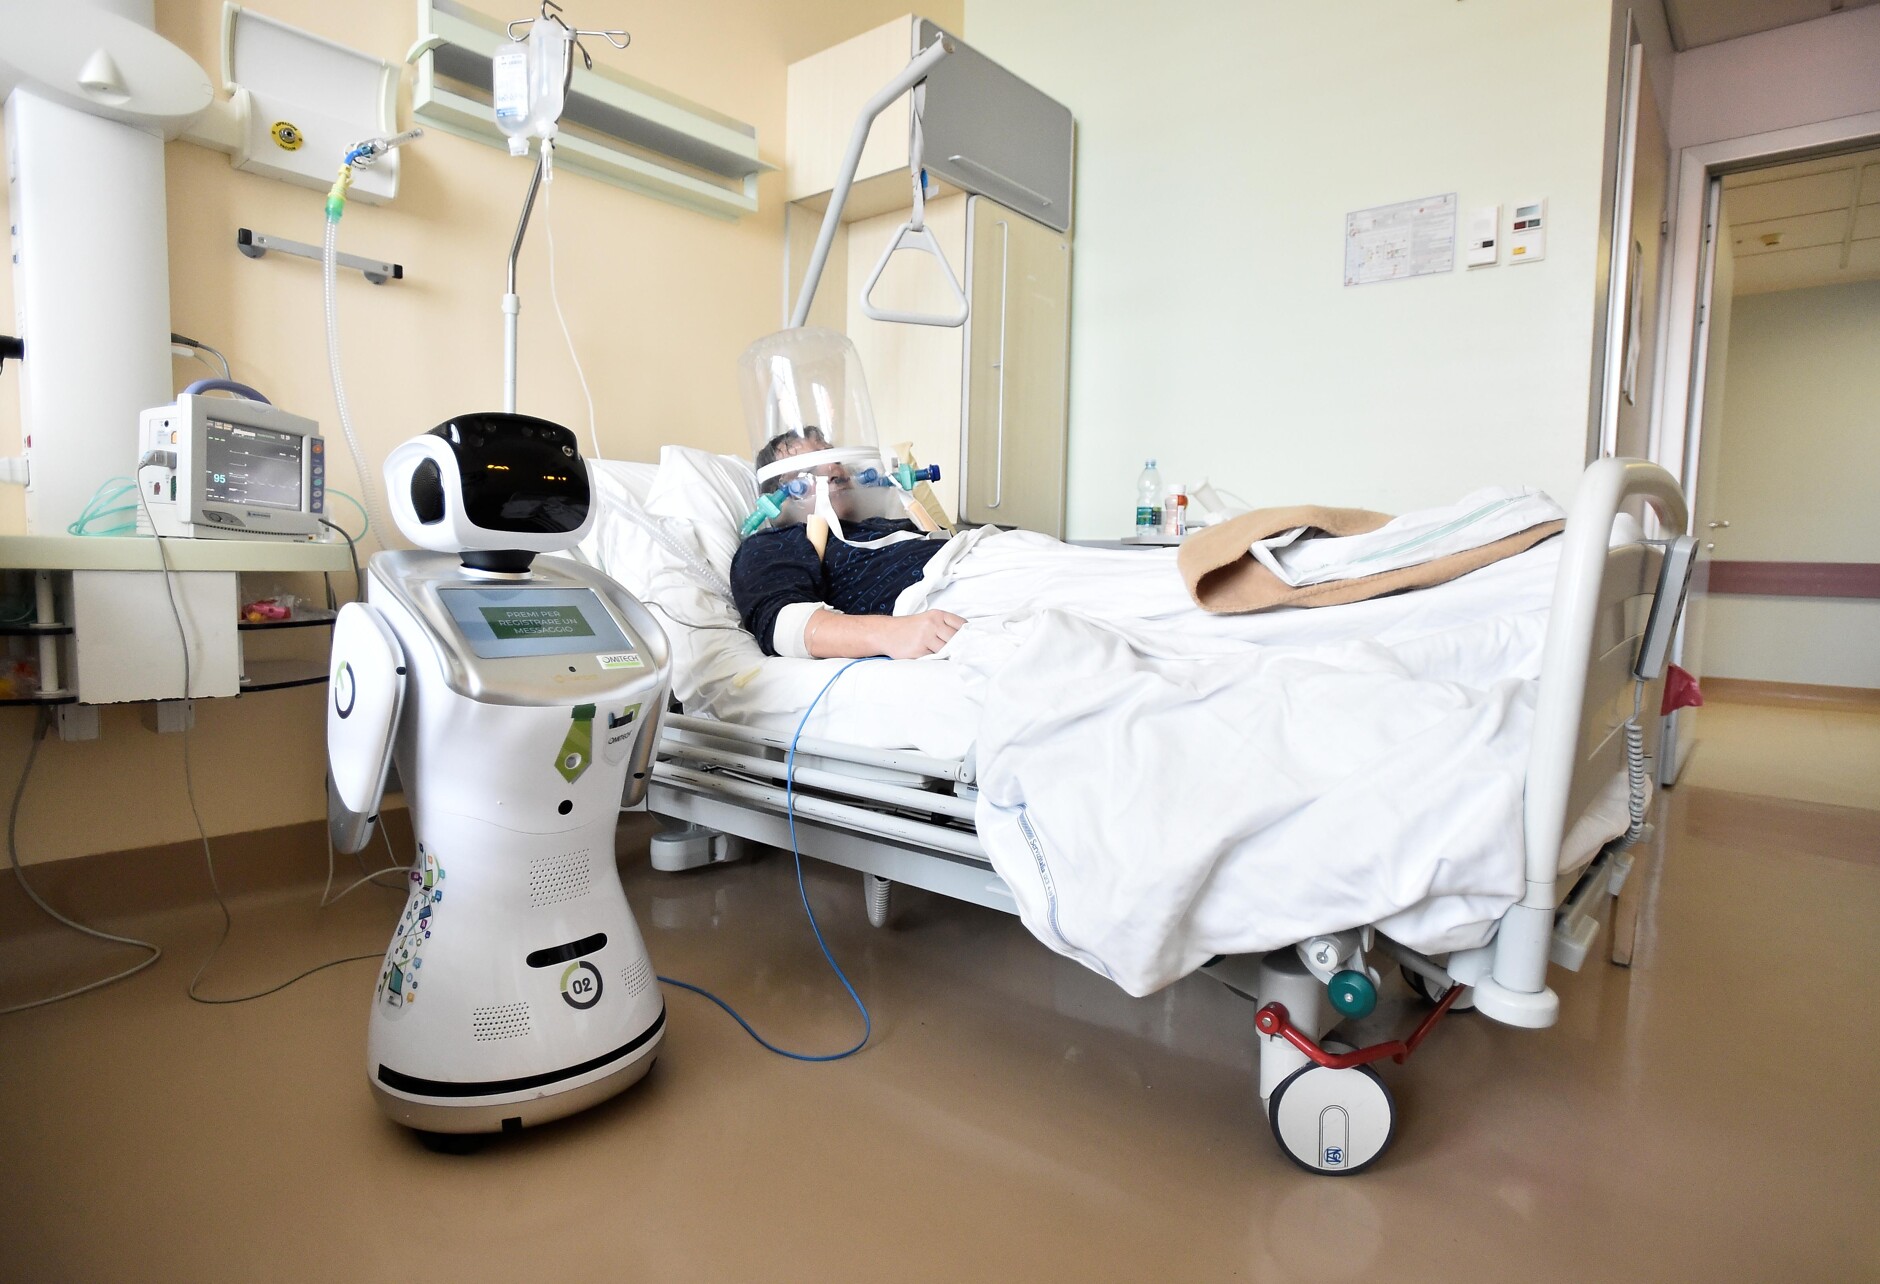 A robot healping treat a patient